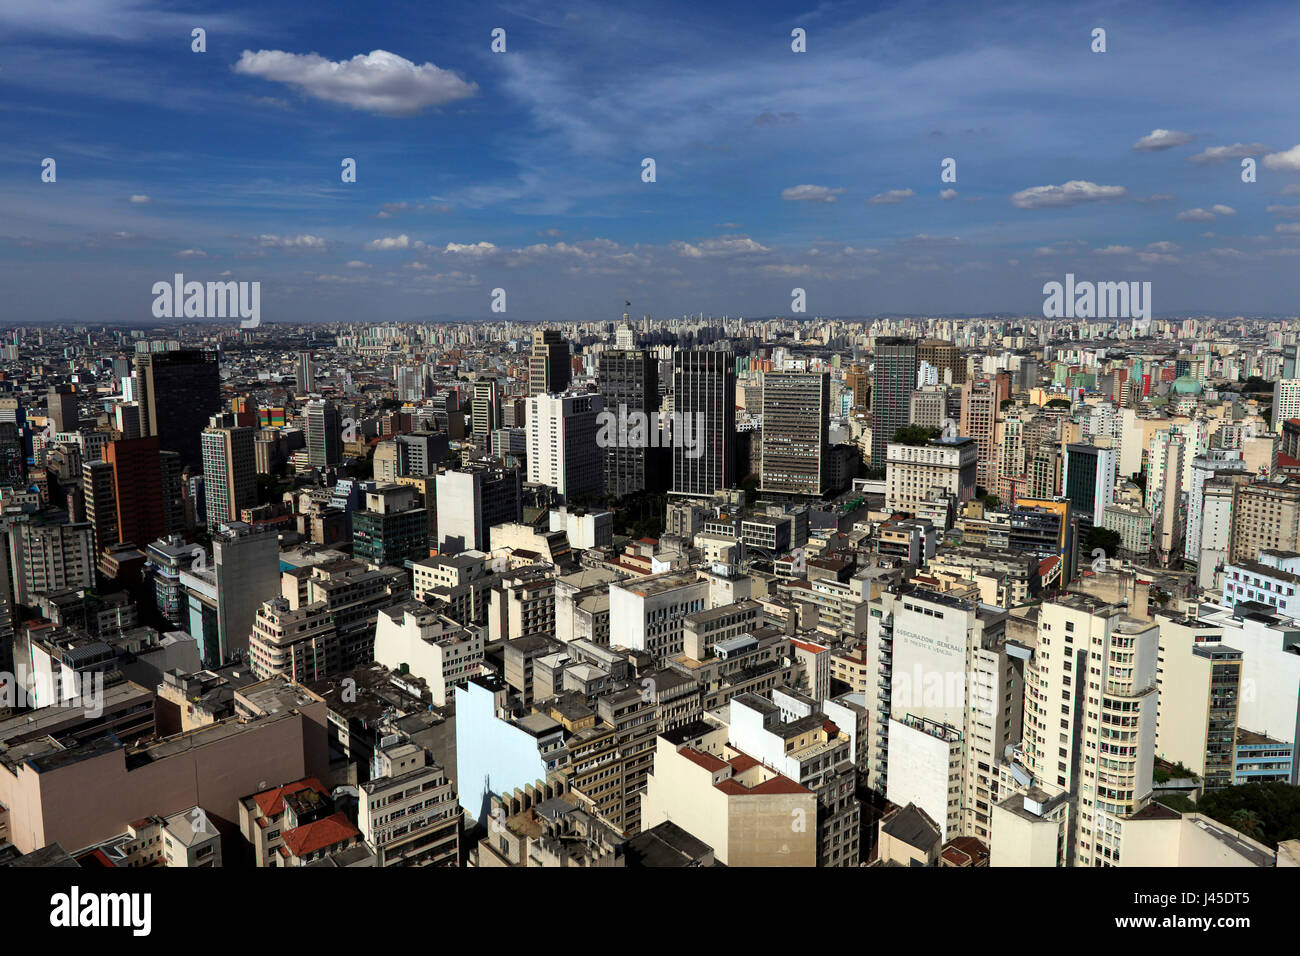 Le centre-ville de São Paulo vue depuis le toit-terrasse de l'Italia building - Sao Paulo - Brésil Banque D'Images